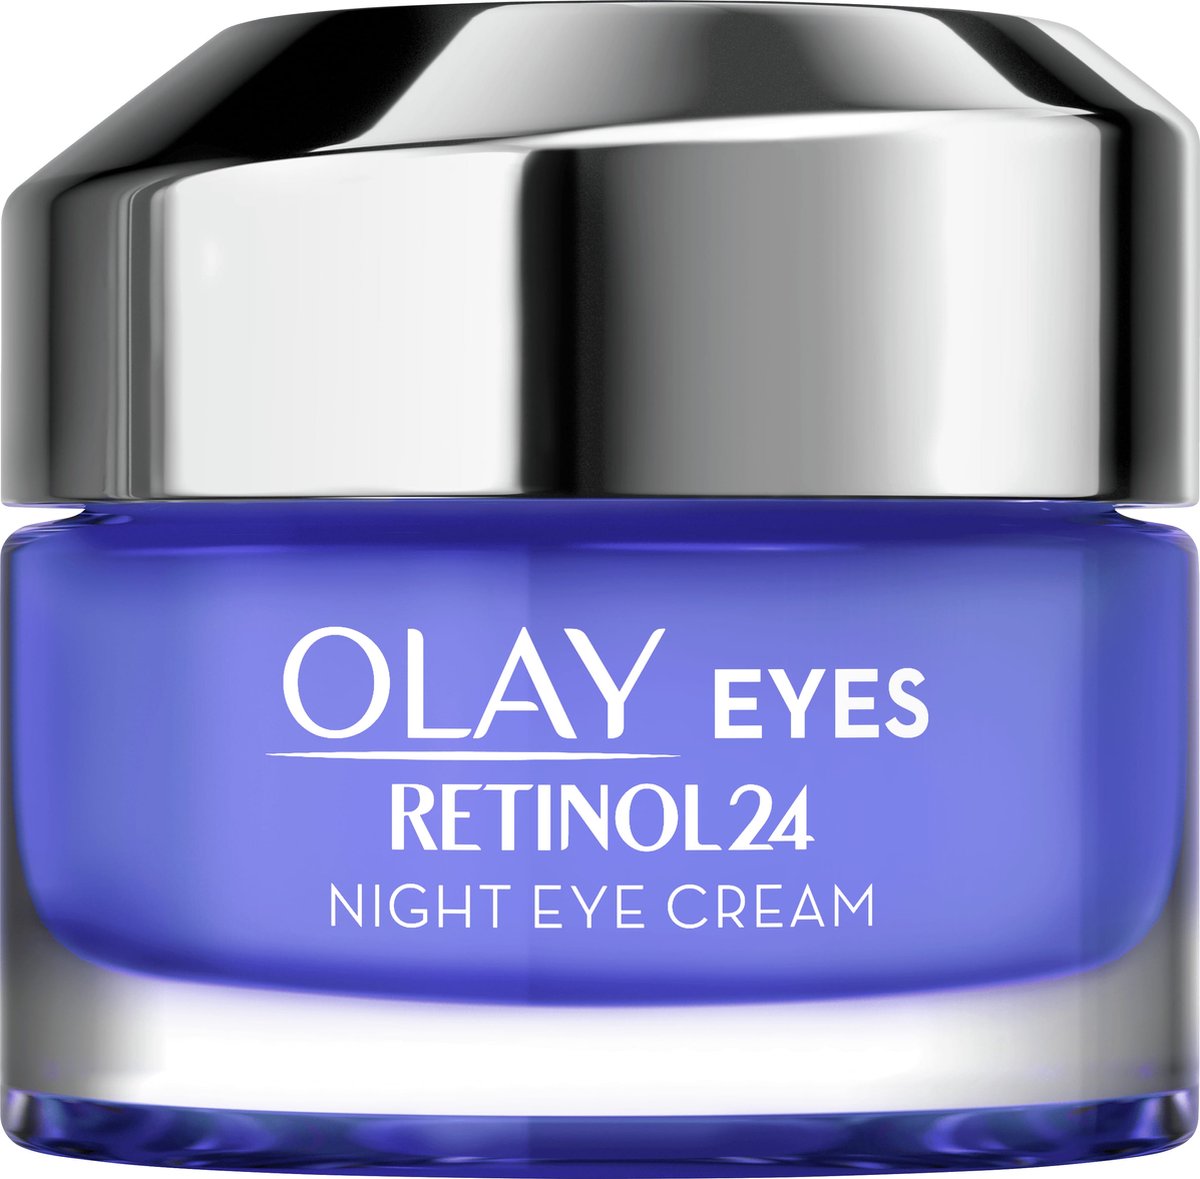 Olay Retinol24 - Oogcrème Voor De Nacht - Met Retinol En Vitamine B3 - 15ml - Olay